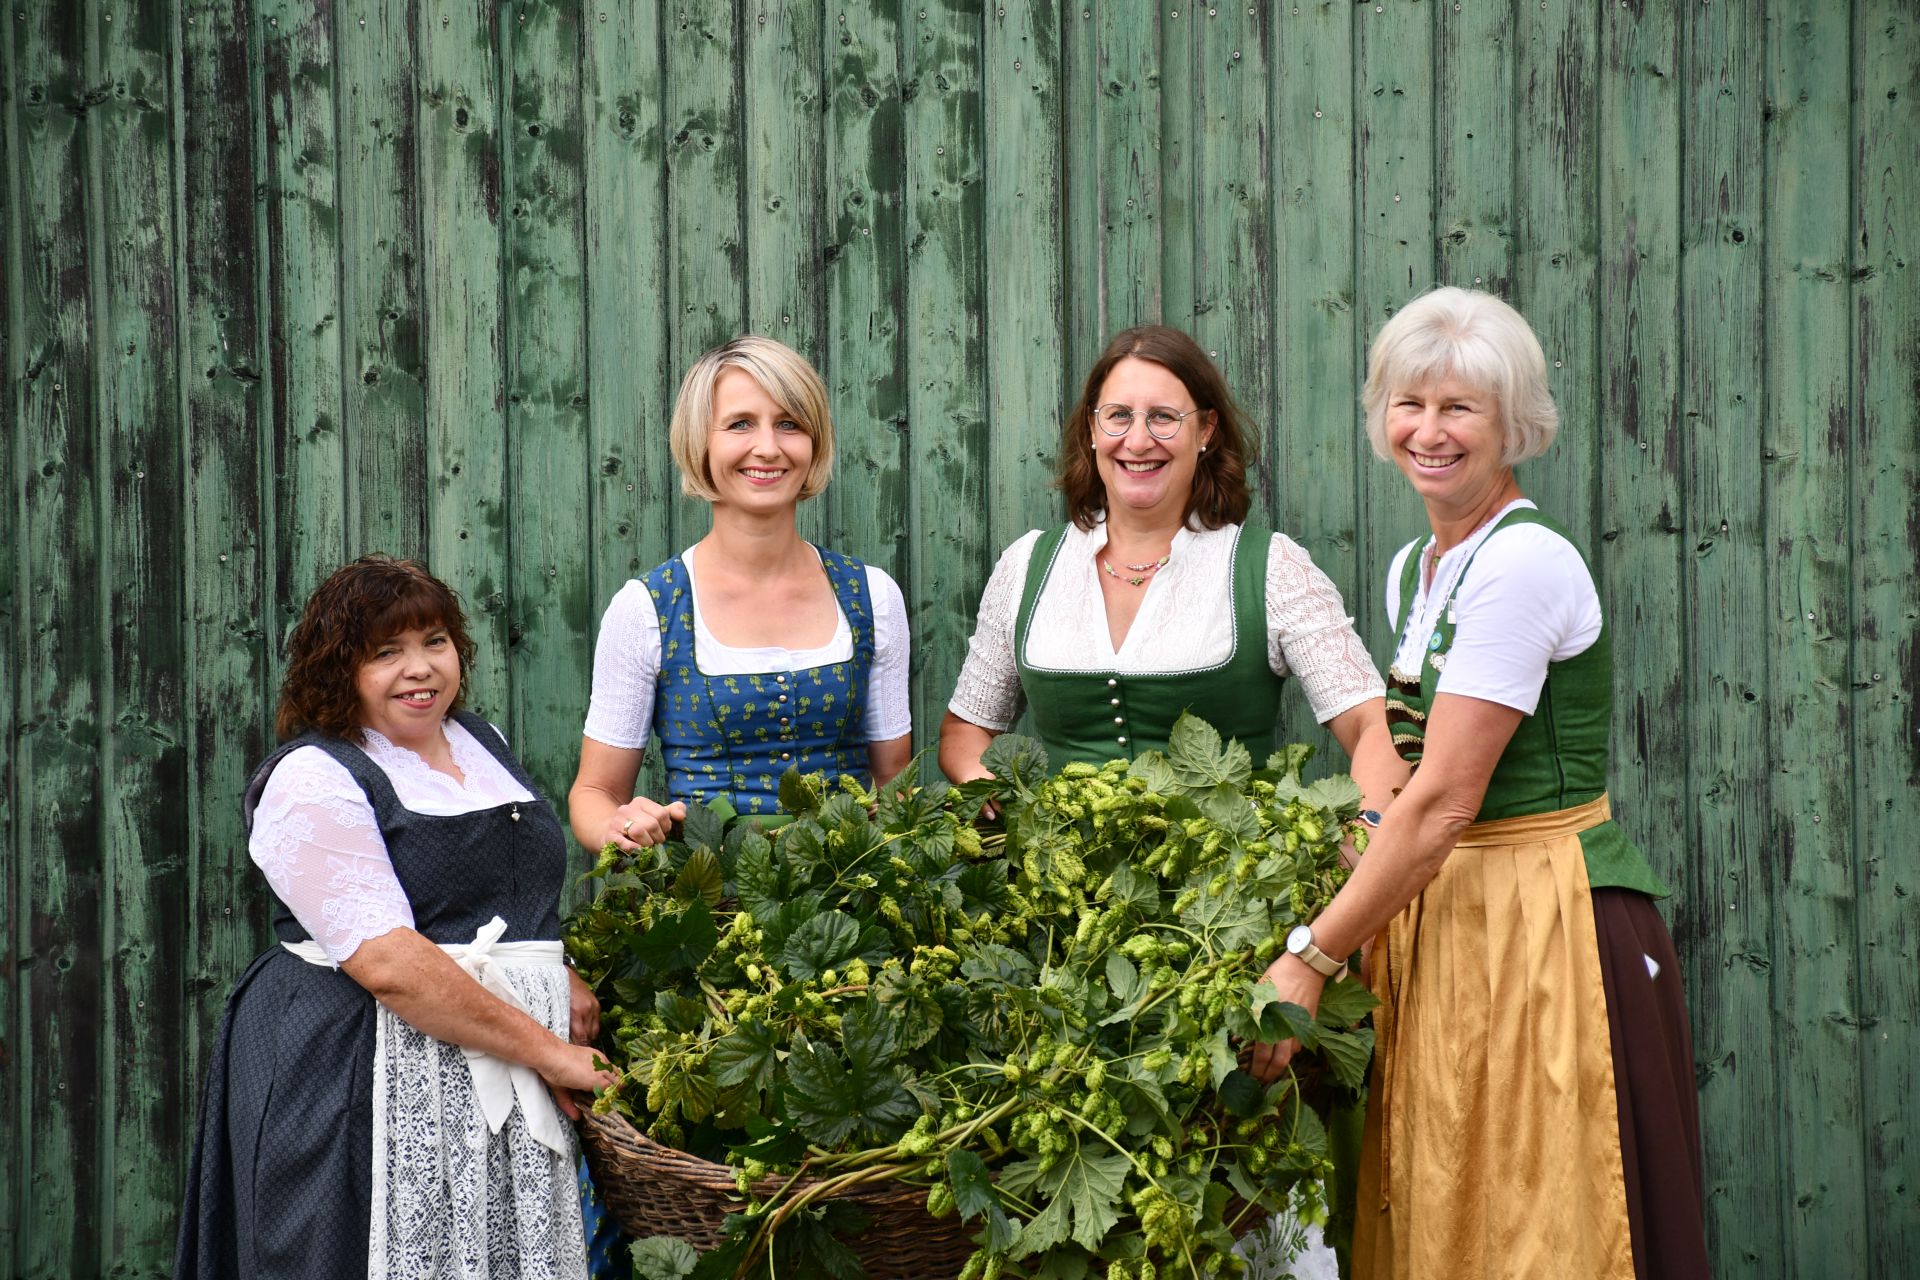 Das Bild zeigt vier Hopfenbotschafterinnen in bayerischer Tracht, welche eine Korb voll frischer Hopfendolden in die Kamera zeigen.